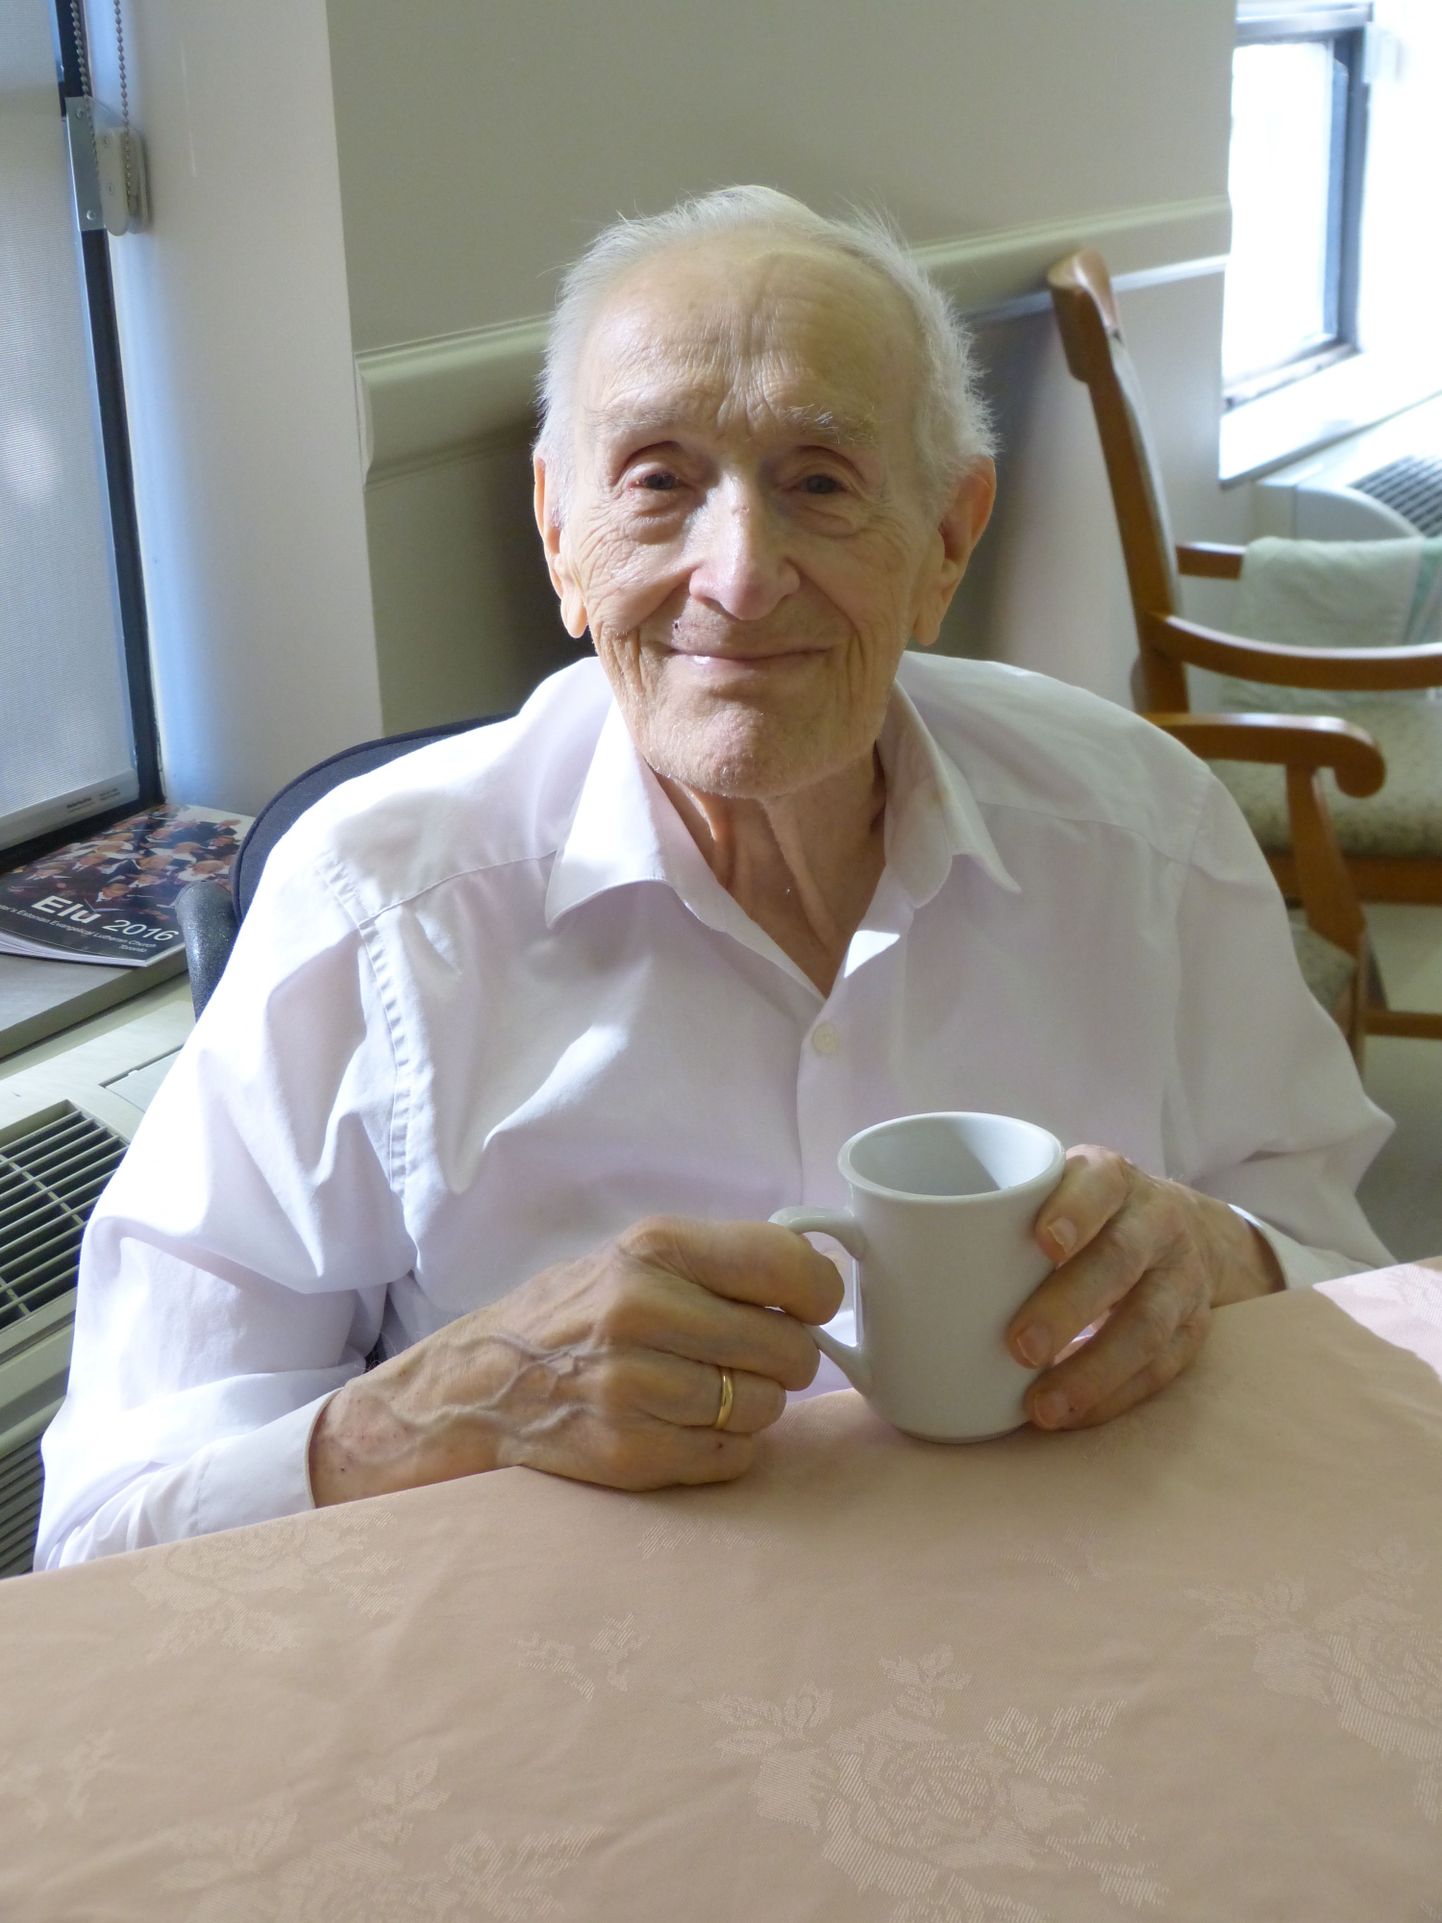 Pildil on Eesti koorilaulu ja eestluse eestvedaja, sel hetkel nelja kuu pärast oma 101. sünnipäeva tähistav Roman Toi Kanadas, Ehatares. Ta ütleb, et eestluse hoidmine on olnud tema elu tähtsaim ülesanne.